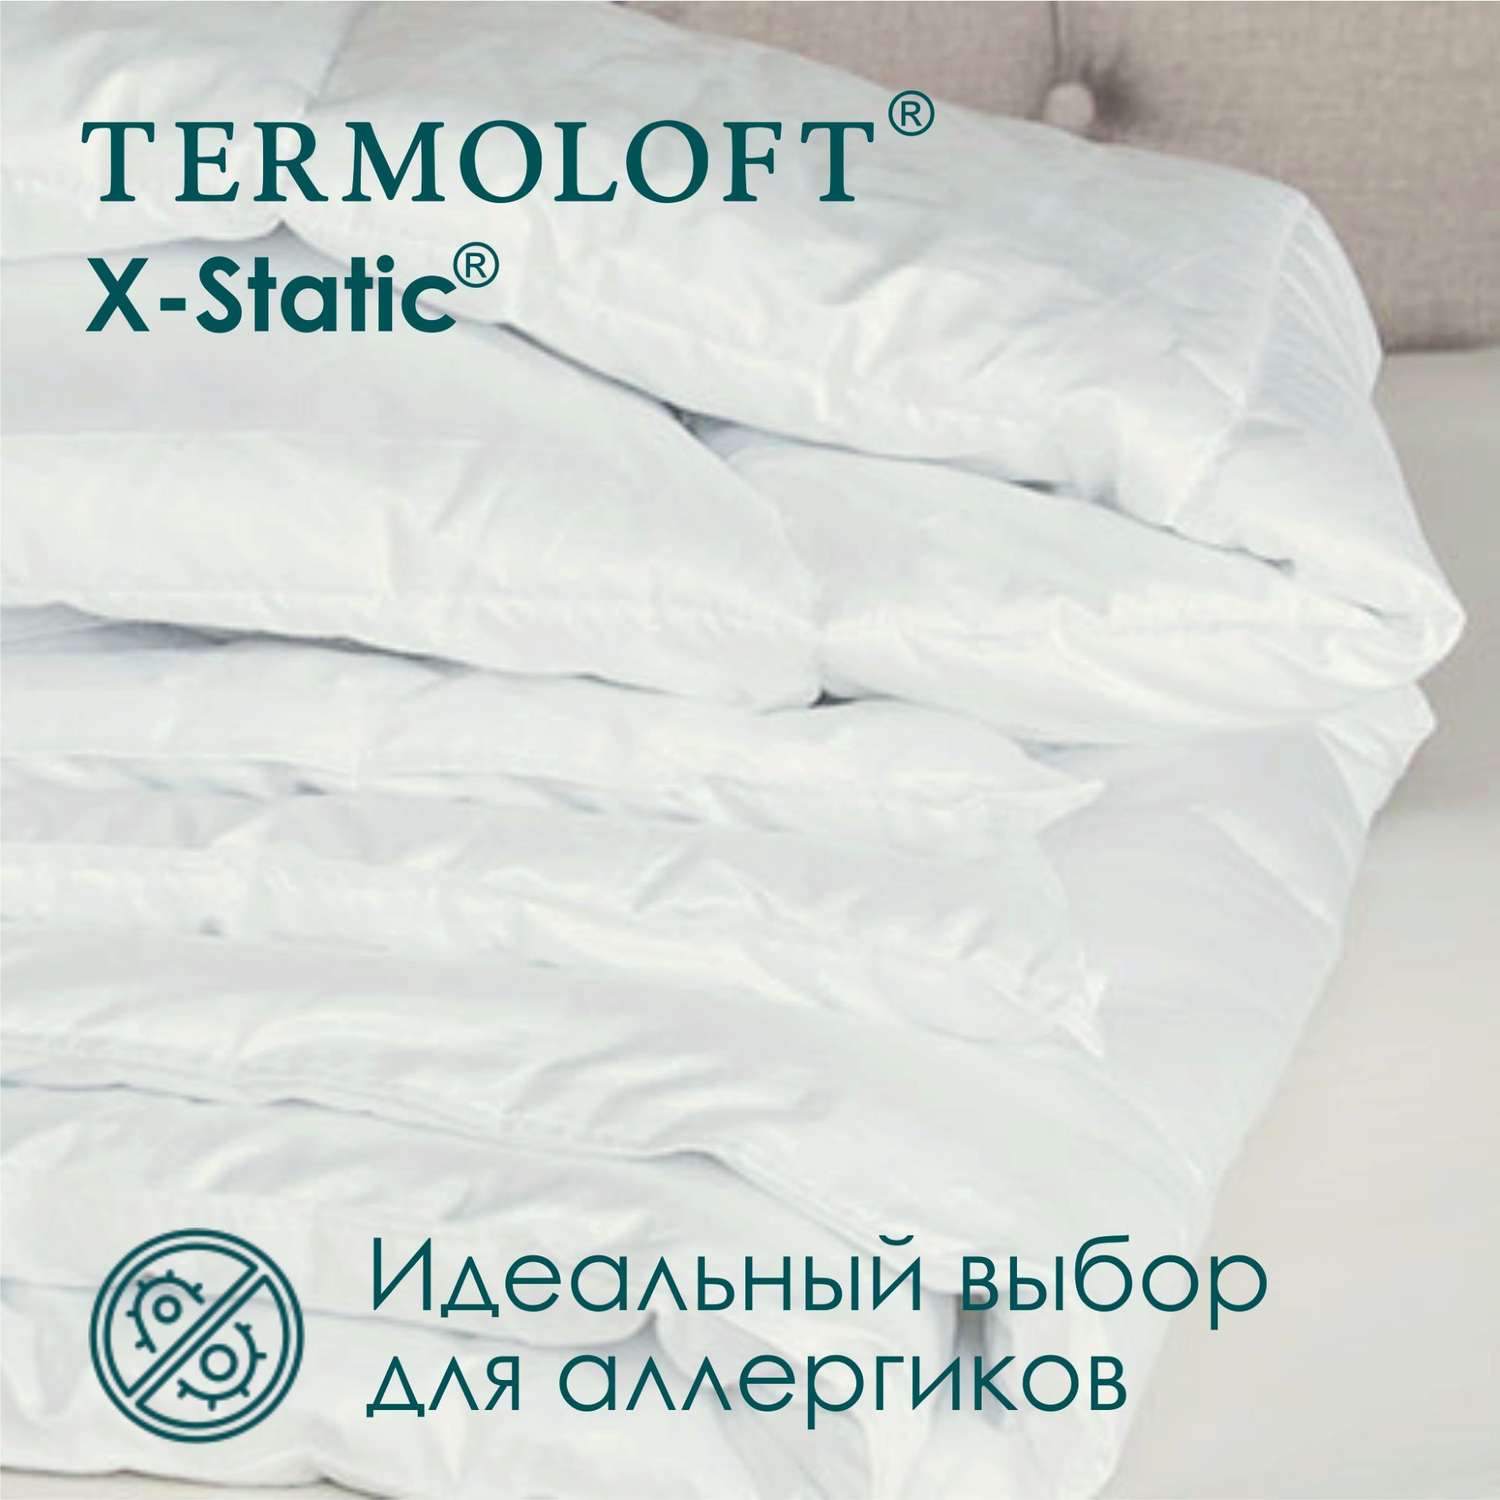 Одеяло Termoloft X-Static с волокнами серебра 145х200 - фото 2